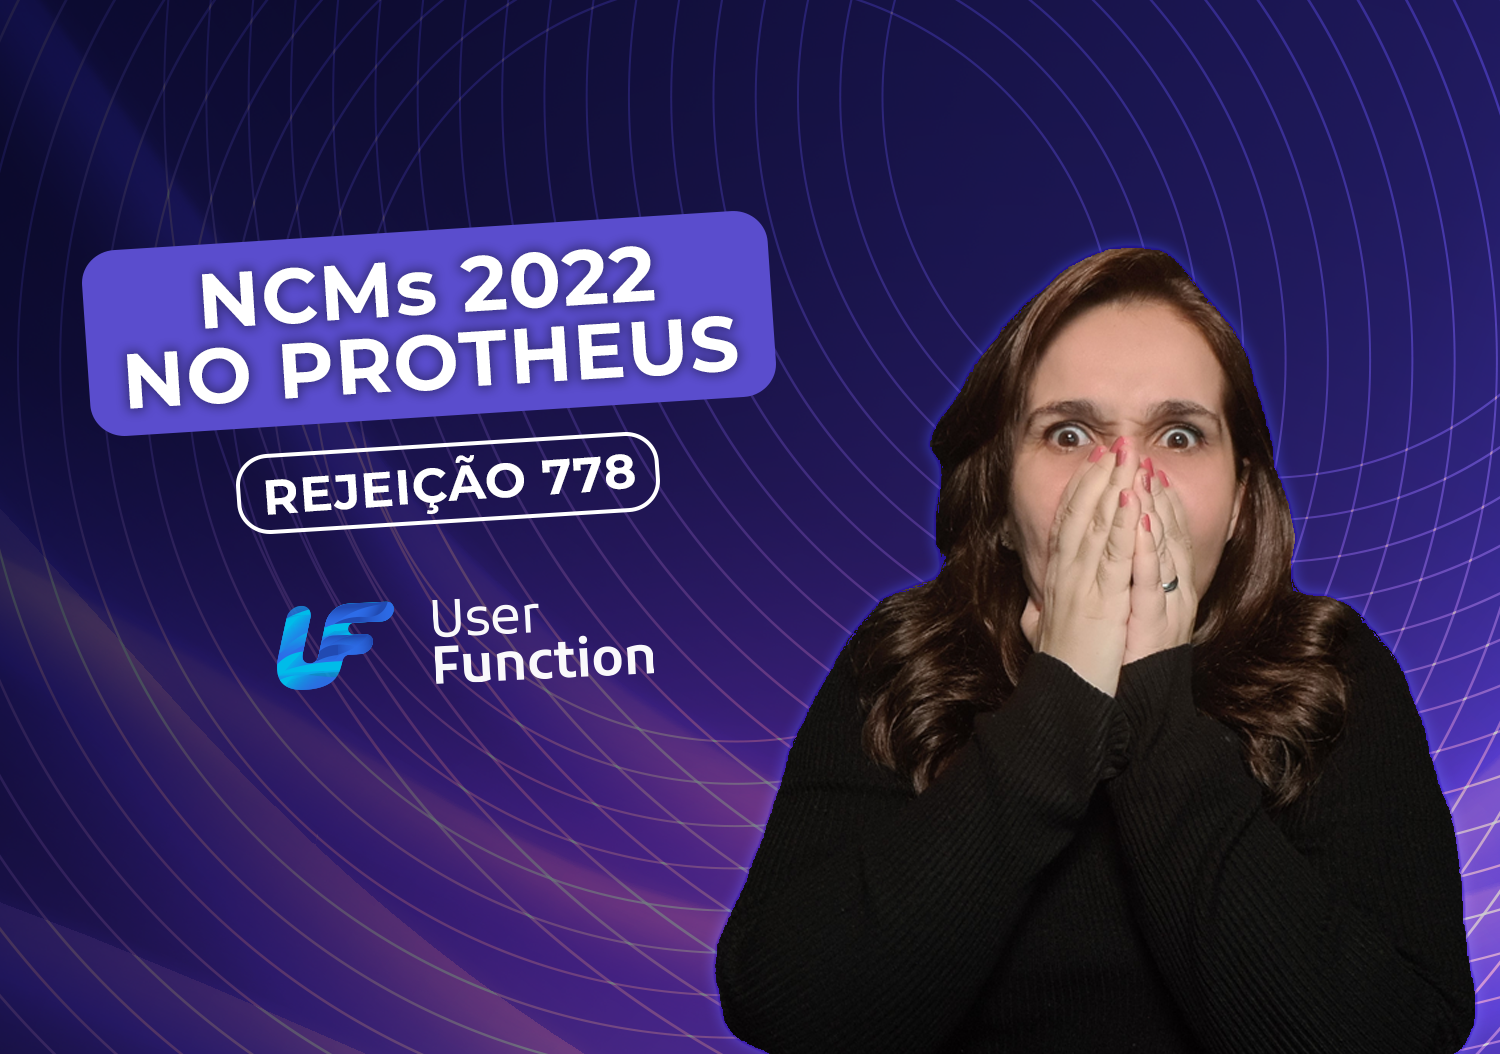 NCMs 2022 no Protheus